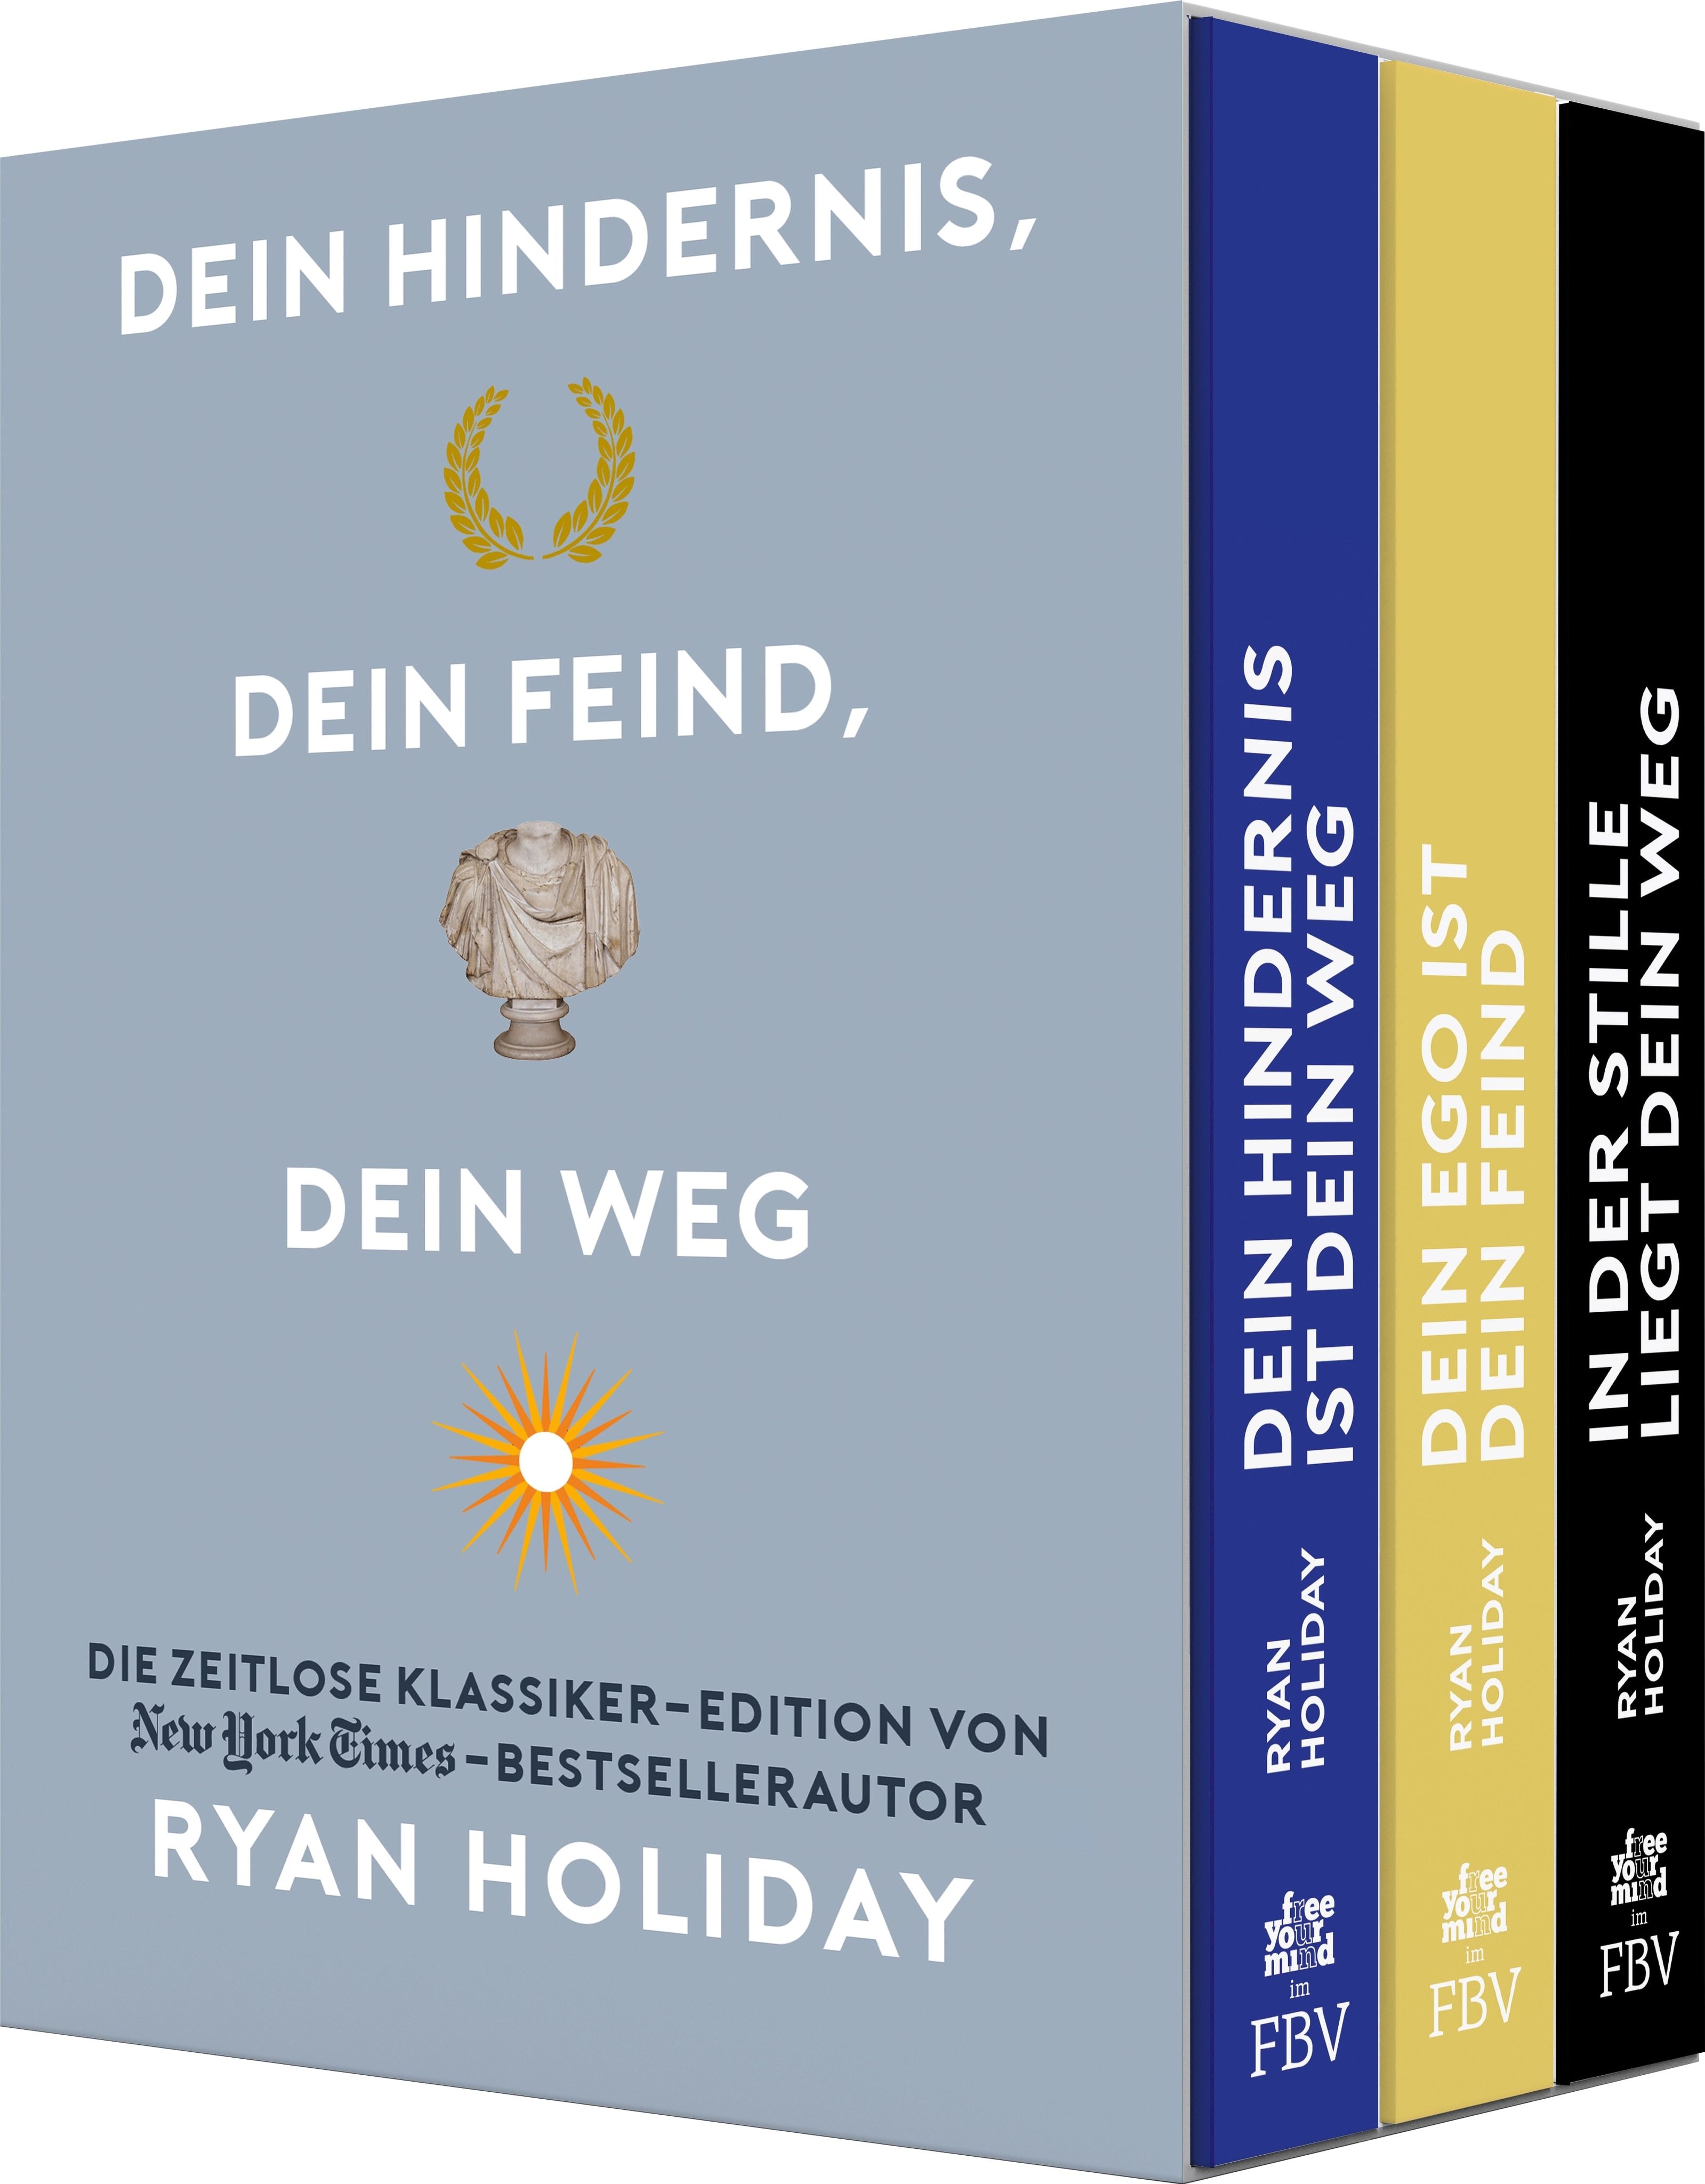 Dein Hindernis, dein Feind, dein Weg – Die Ryan-Holiday-Klassiker-Edition im edlen Schuber